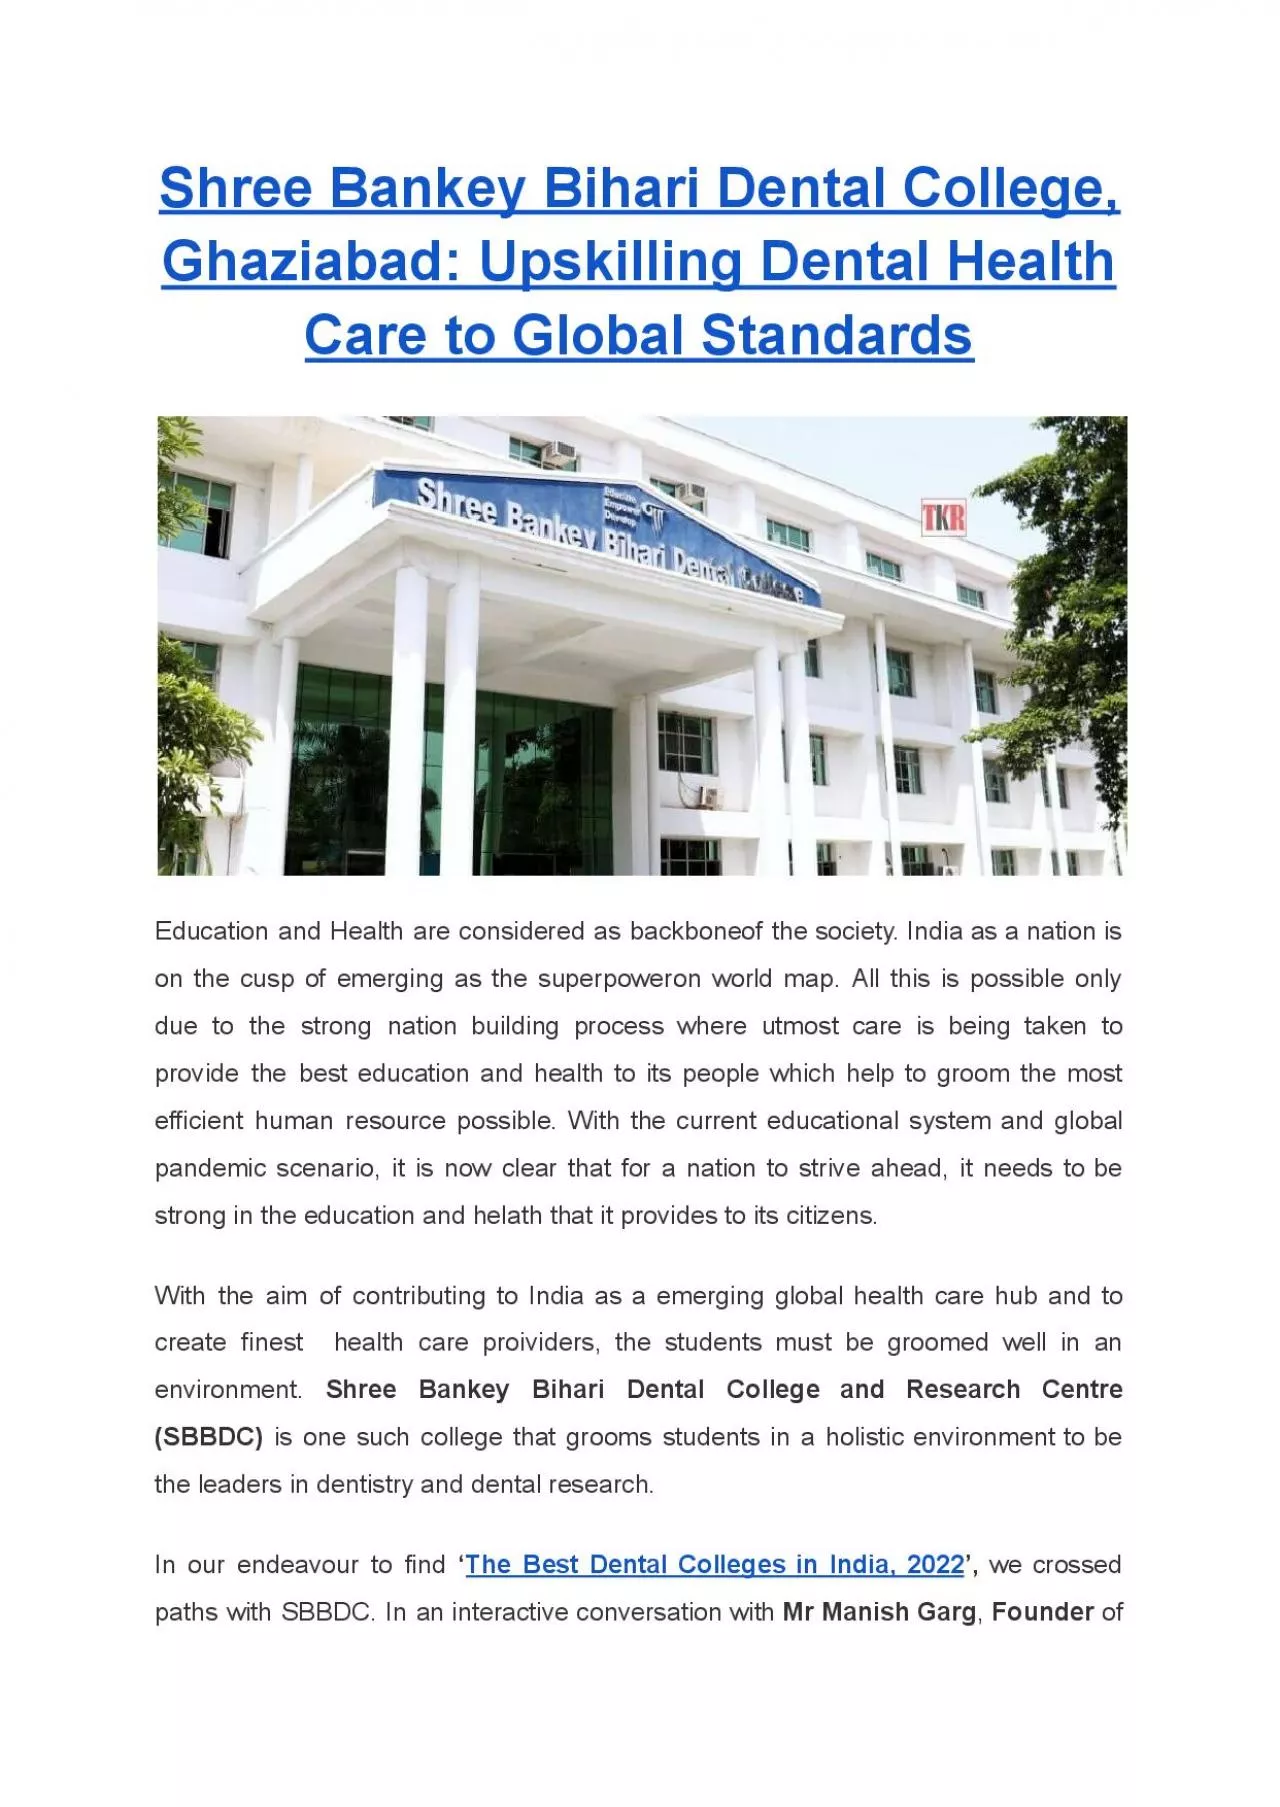 Shree Bankey Bihari Dental College, Ghaziabad: Upskilling Dental Health Care to Global